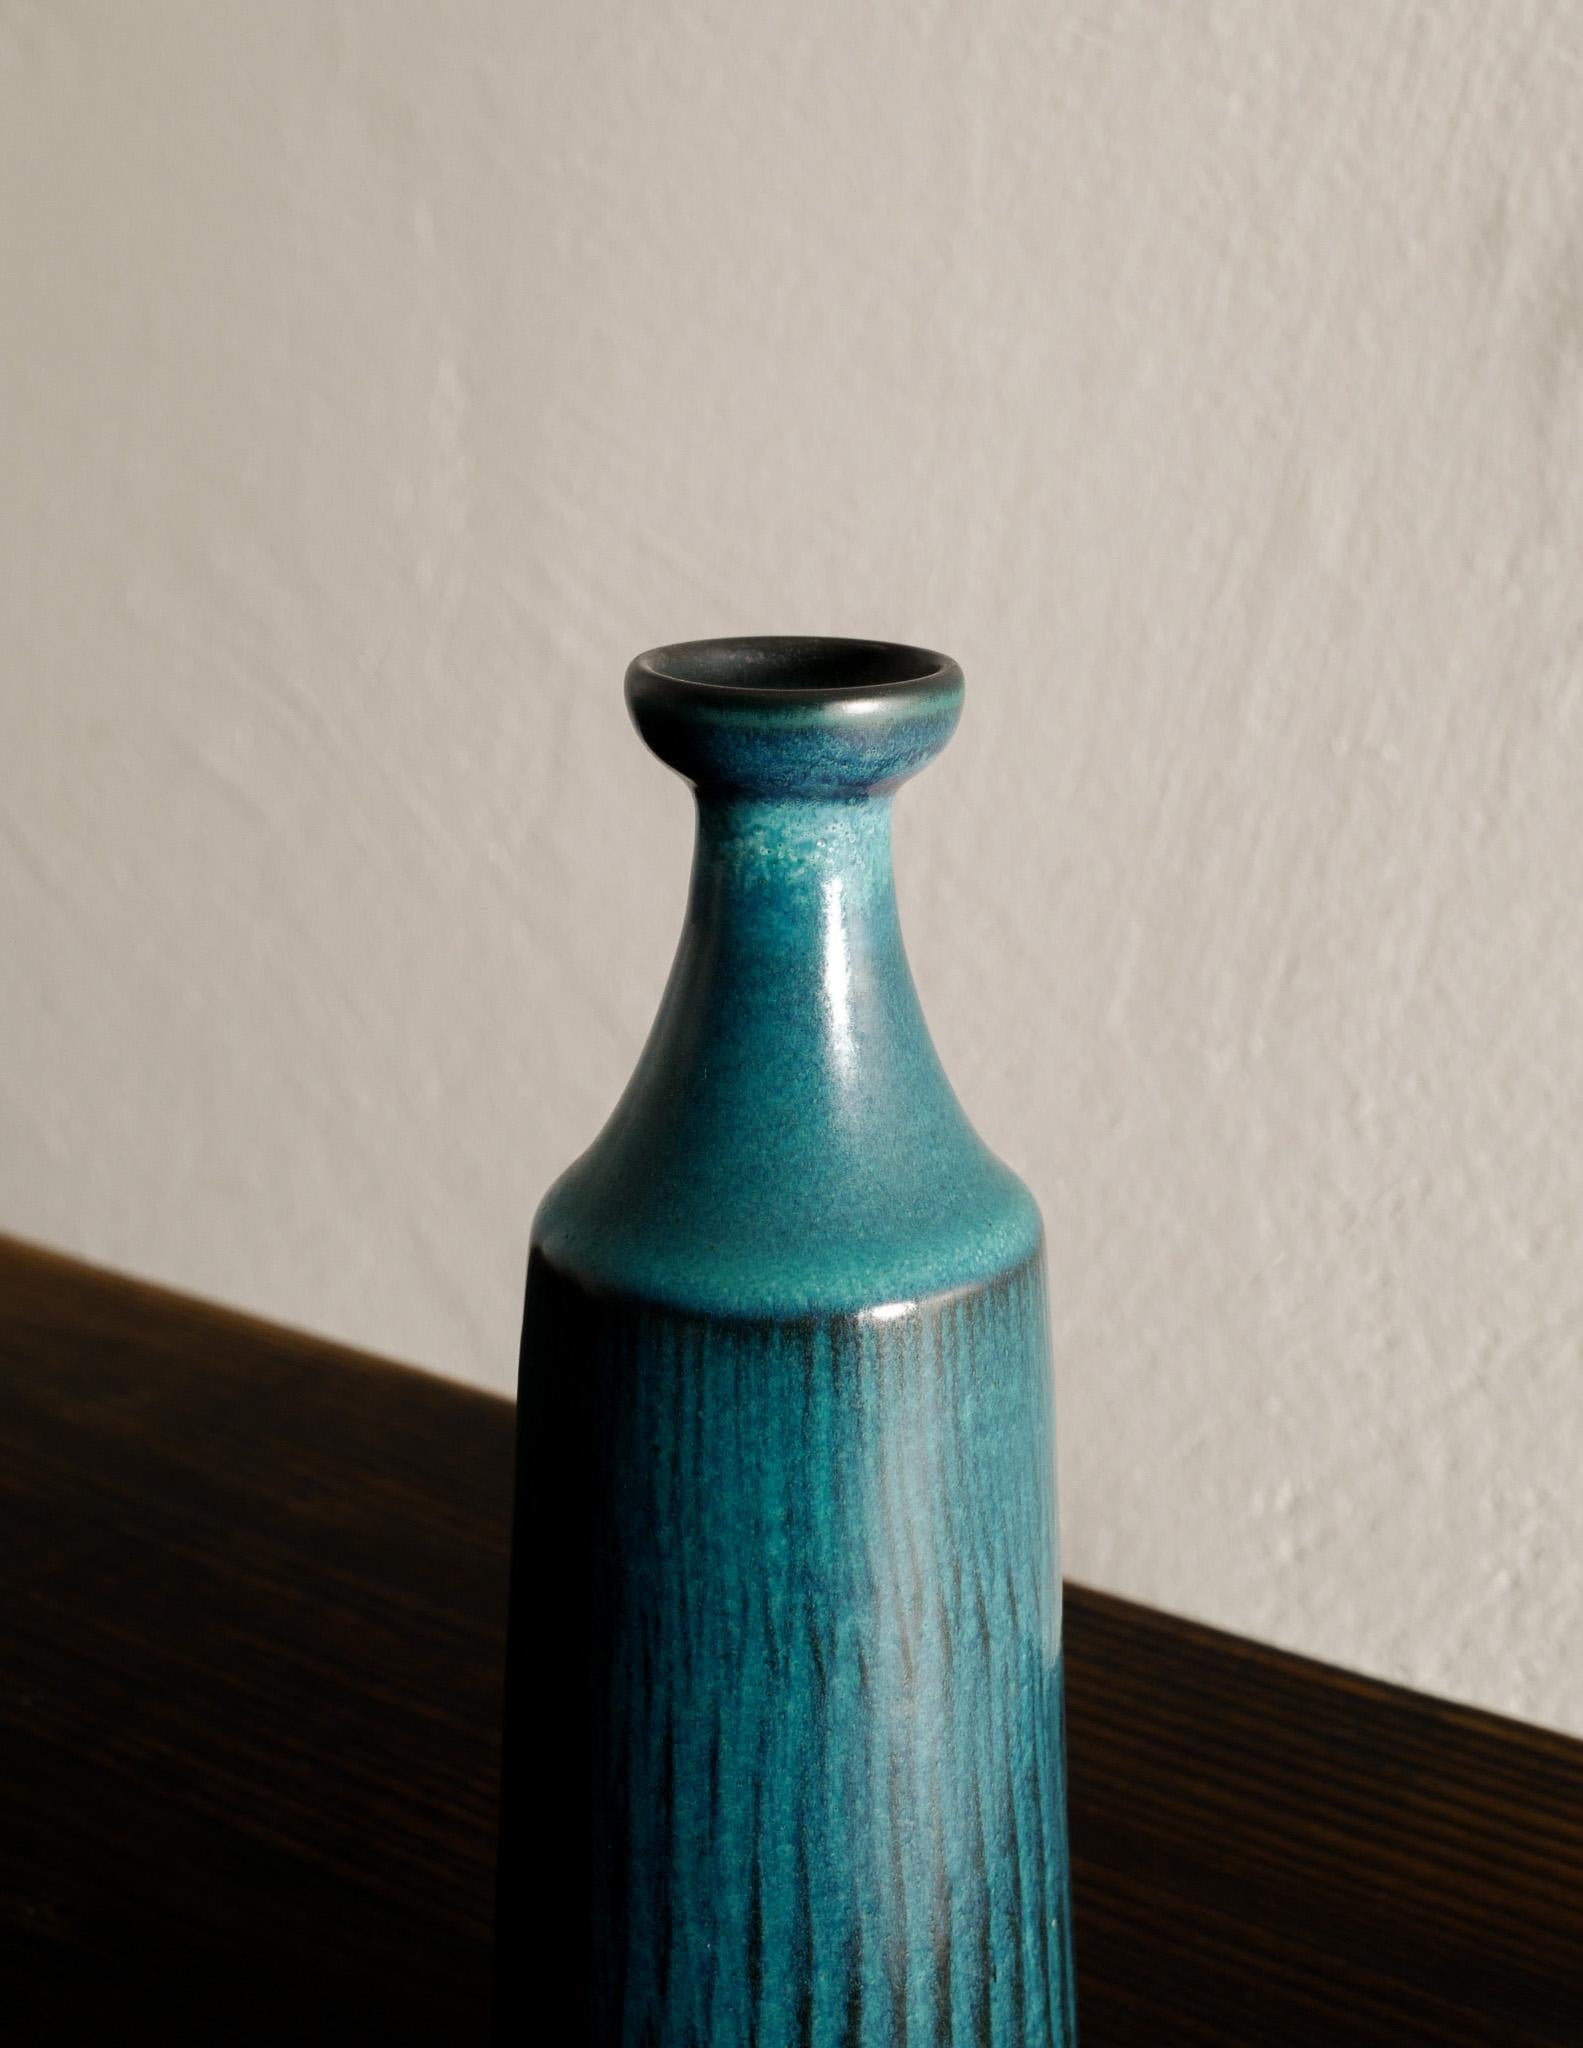 Scandinavian Modern Gunnar Nylund Turquoise Mid Century Ceramic Vase for Nymølle, Denmark, 1950s For Sale